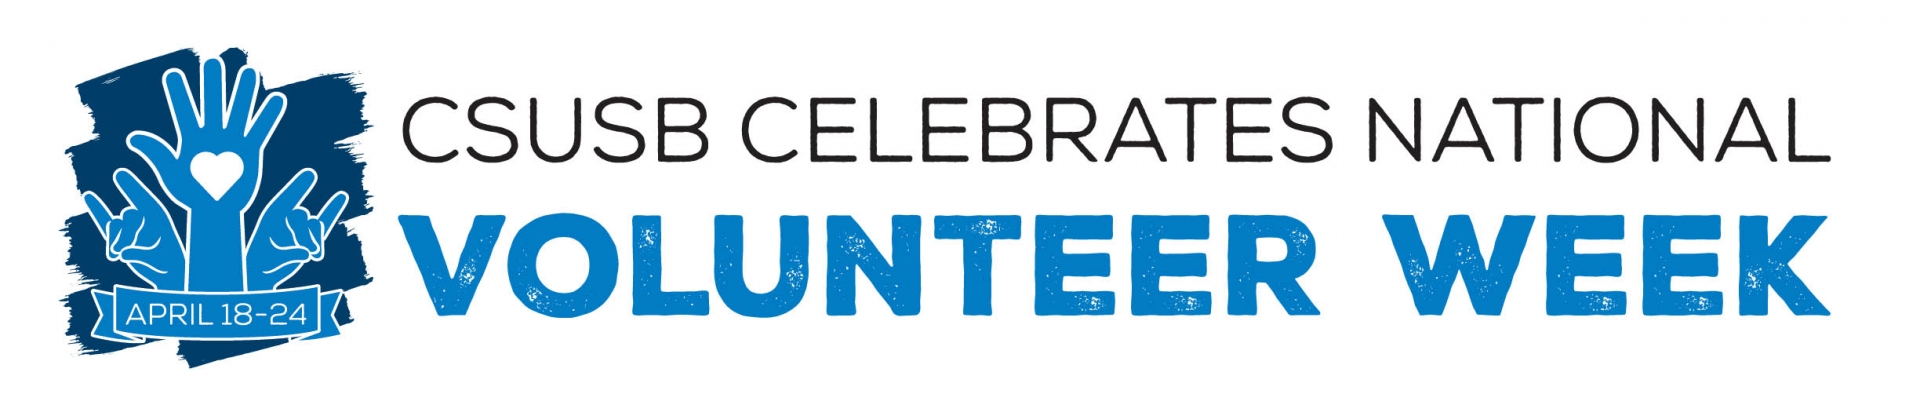 National Volunteer Week web banner 2021